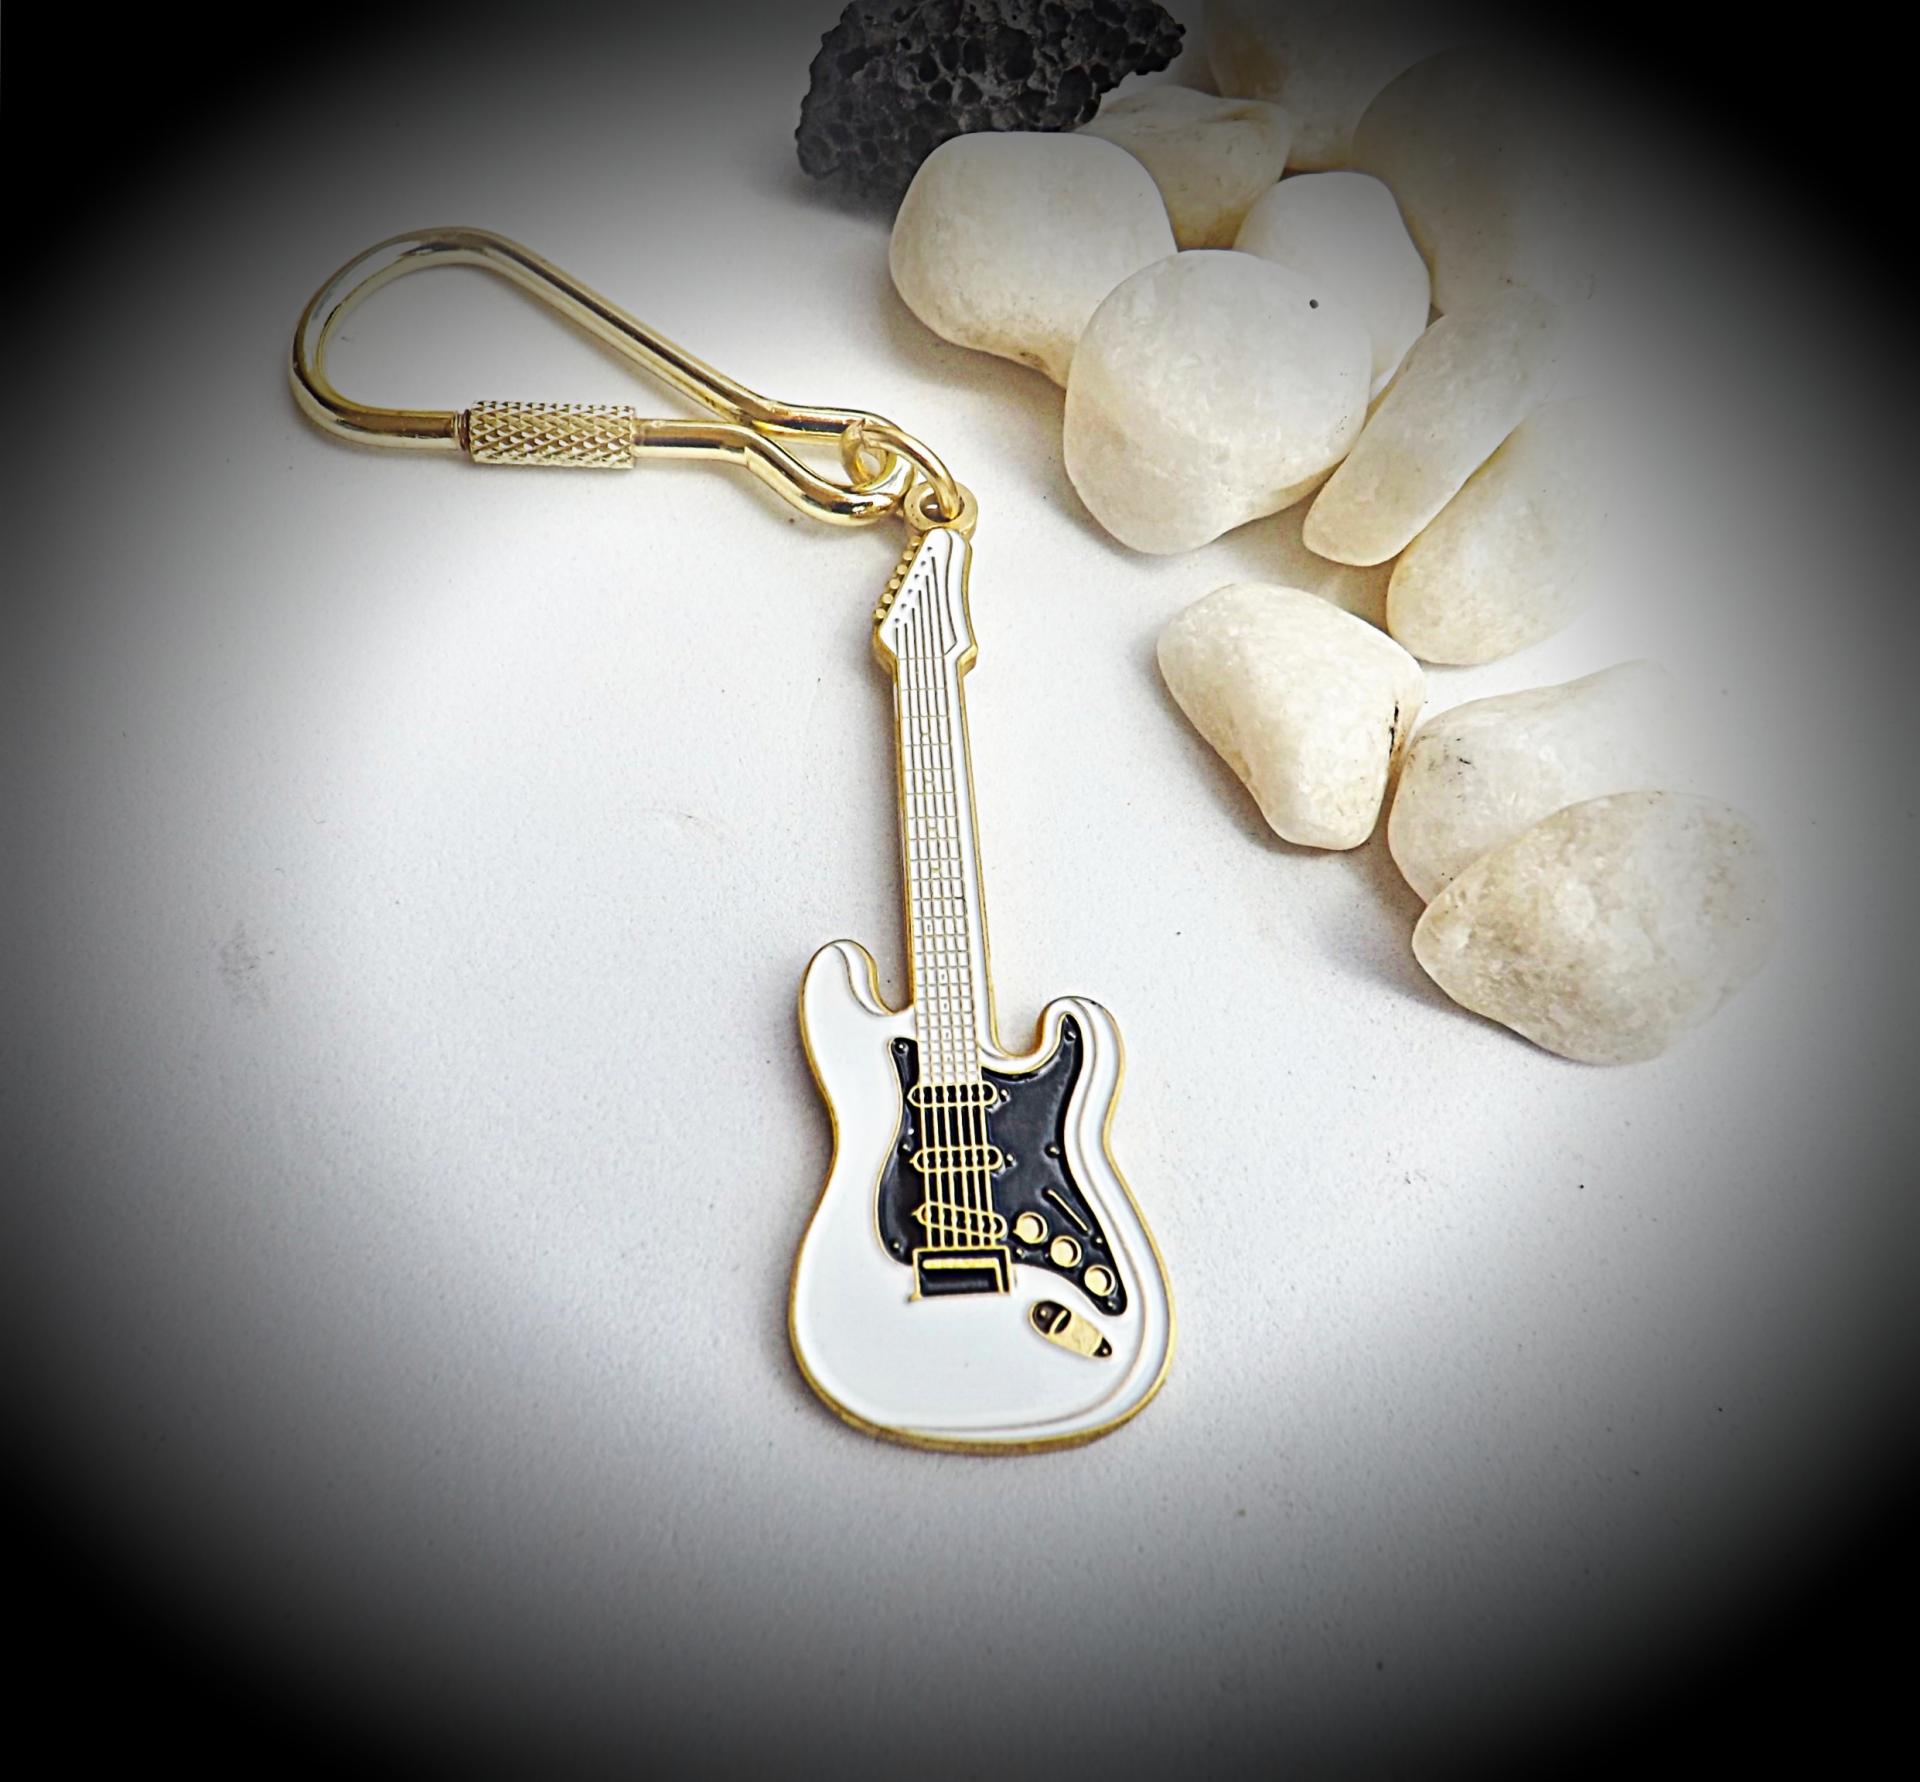 Fender Stratocaster Guitar Keychain/Keyring - White